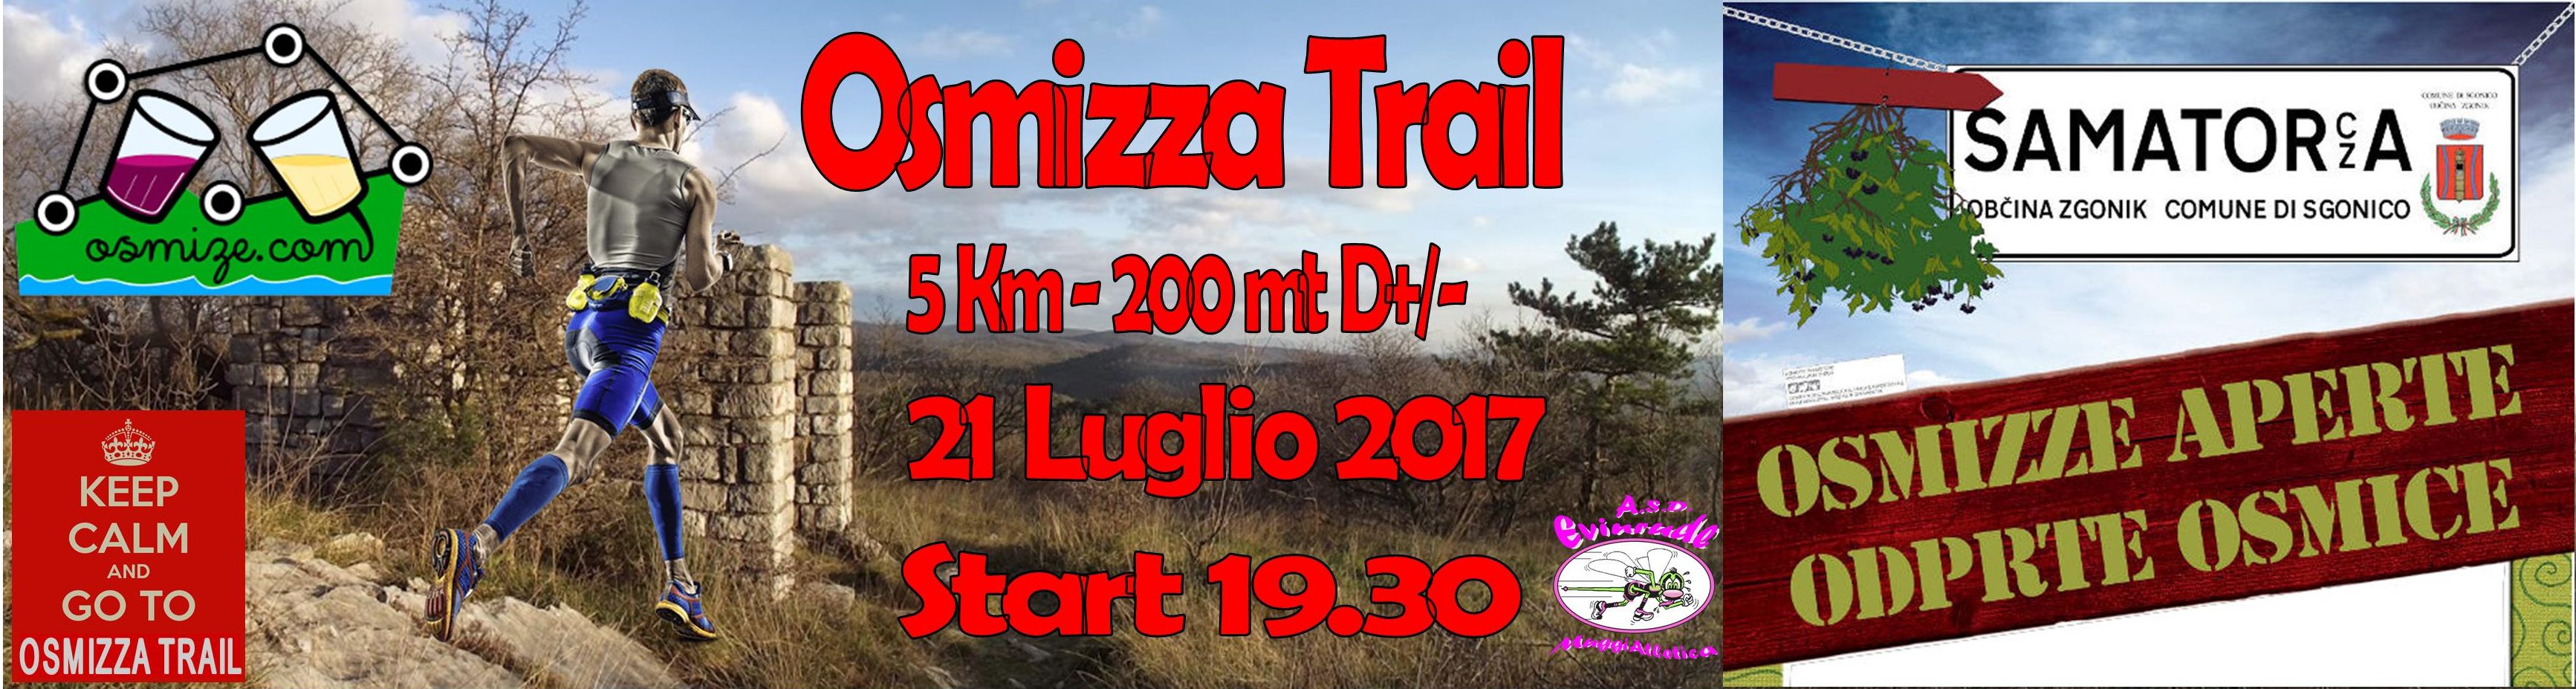 Volantino Osmiza Trail 2017